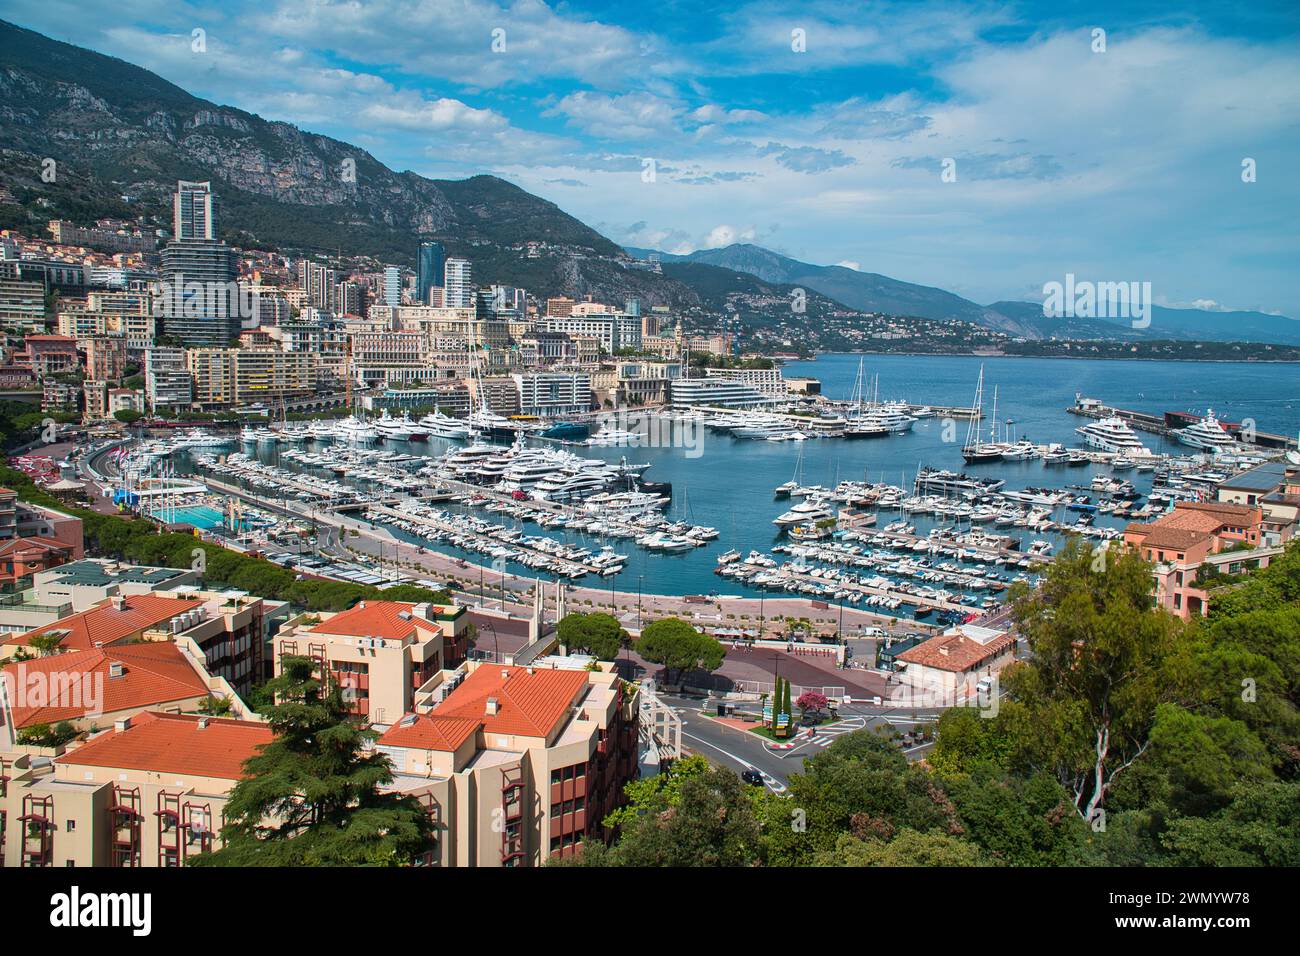 Montecarlo, Mónaco - Agosto 3,2021: Una hermosa vista panorámica de la bahía en Montecarlo en Mónaco parte de la famosa riviera francesa bordeada de super lujo Foto de stock